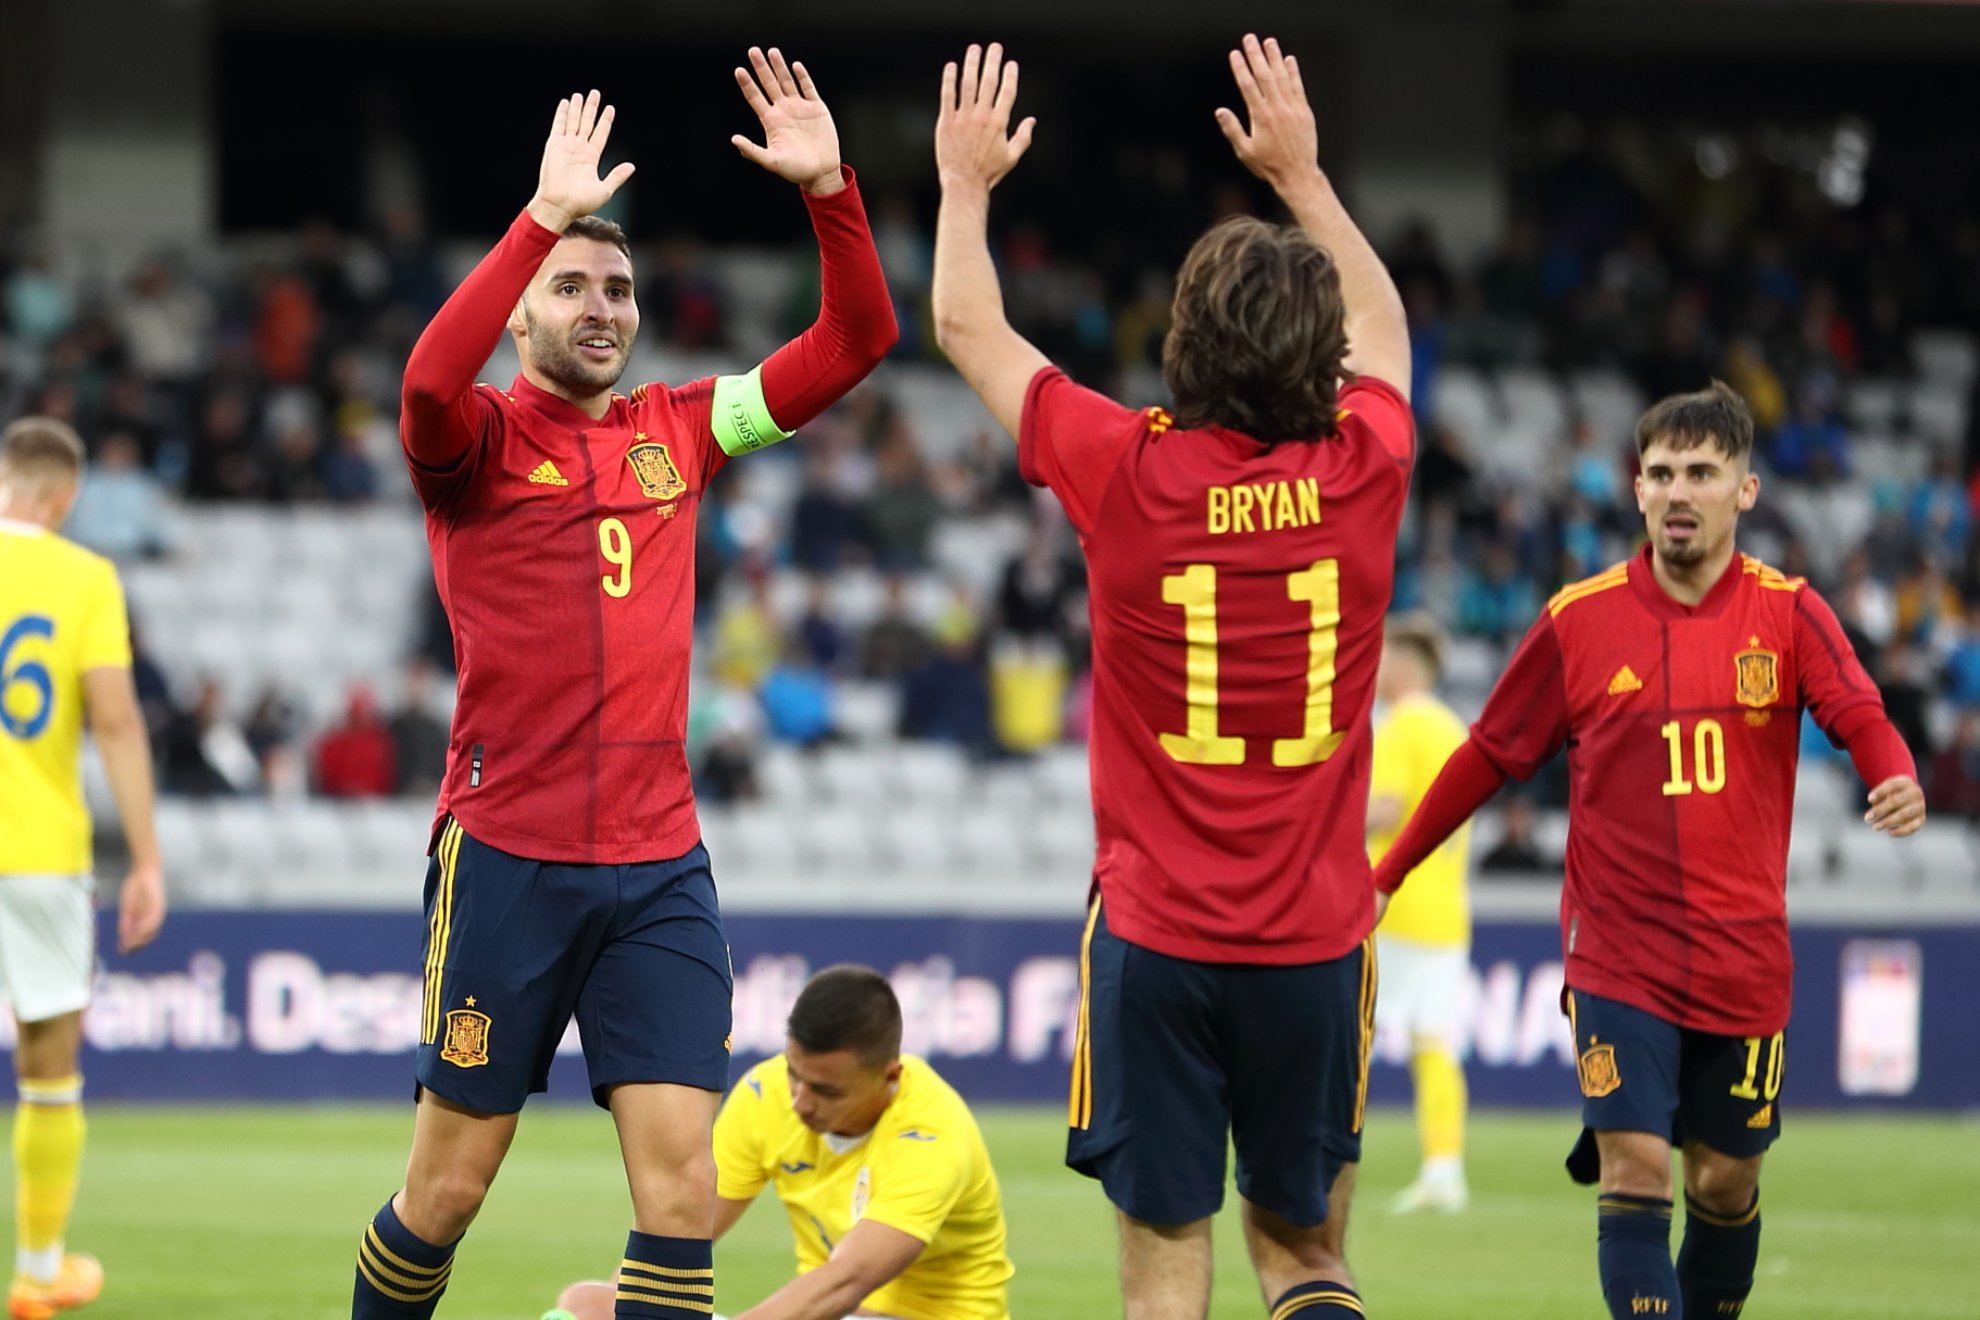 Abel Ruiz y Bryan celebran el segundo gol de España / RFEF